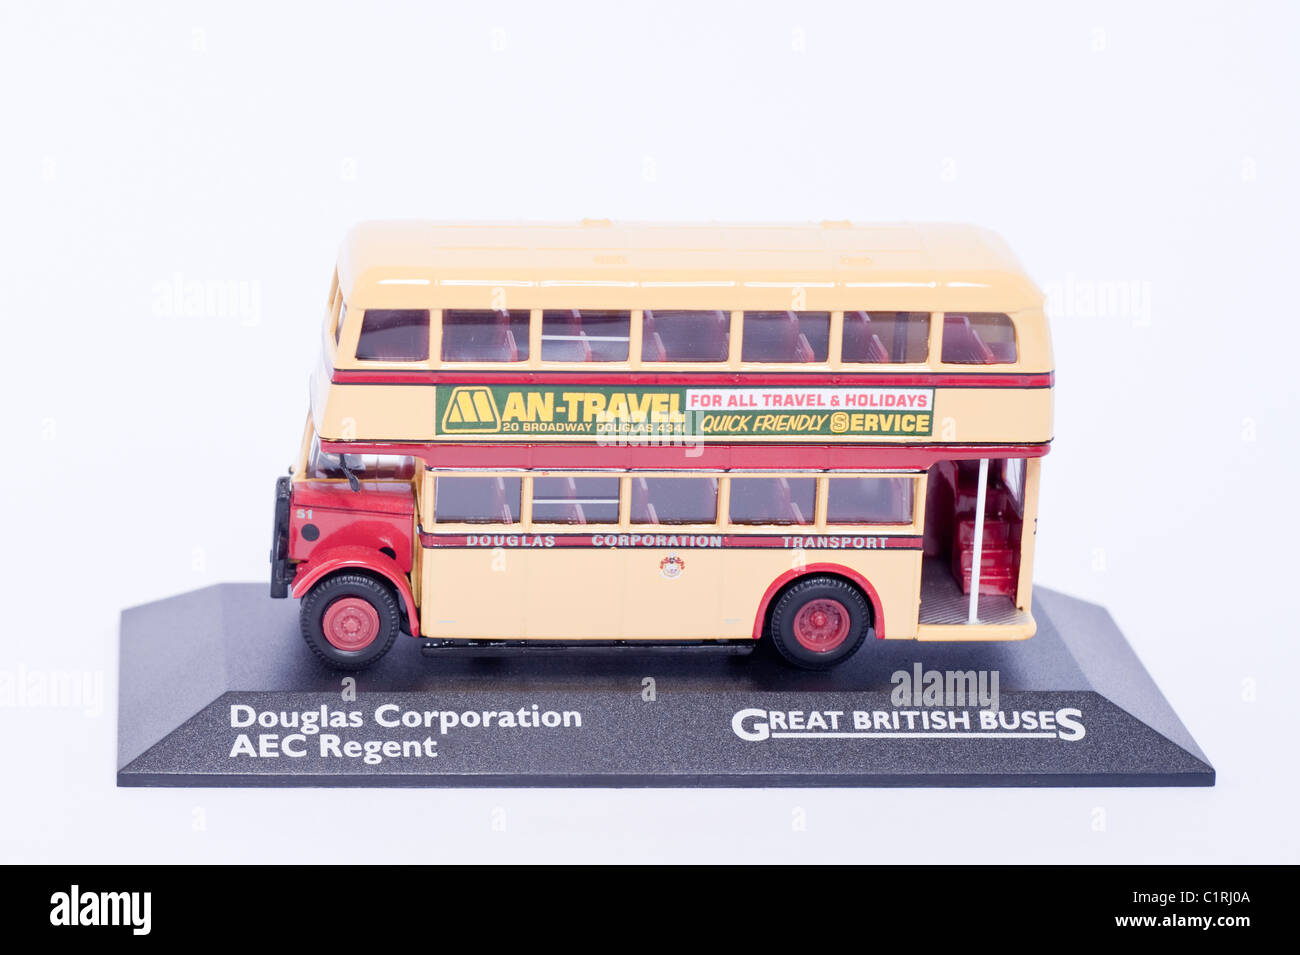 Un modèle Douglas Corporation FIAT 471 Great British bus sur un fond blanc Banque D'Images